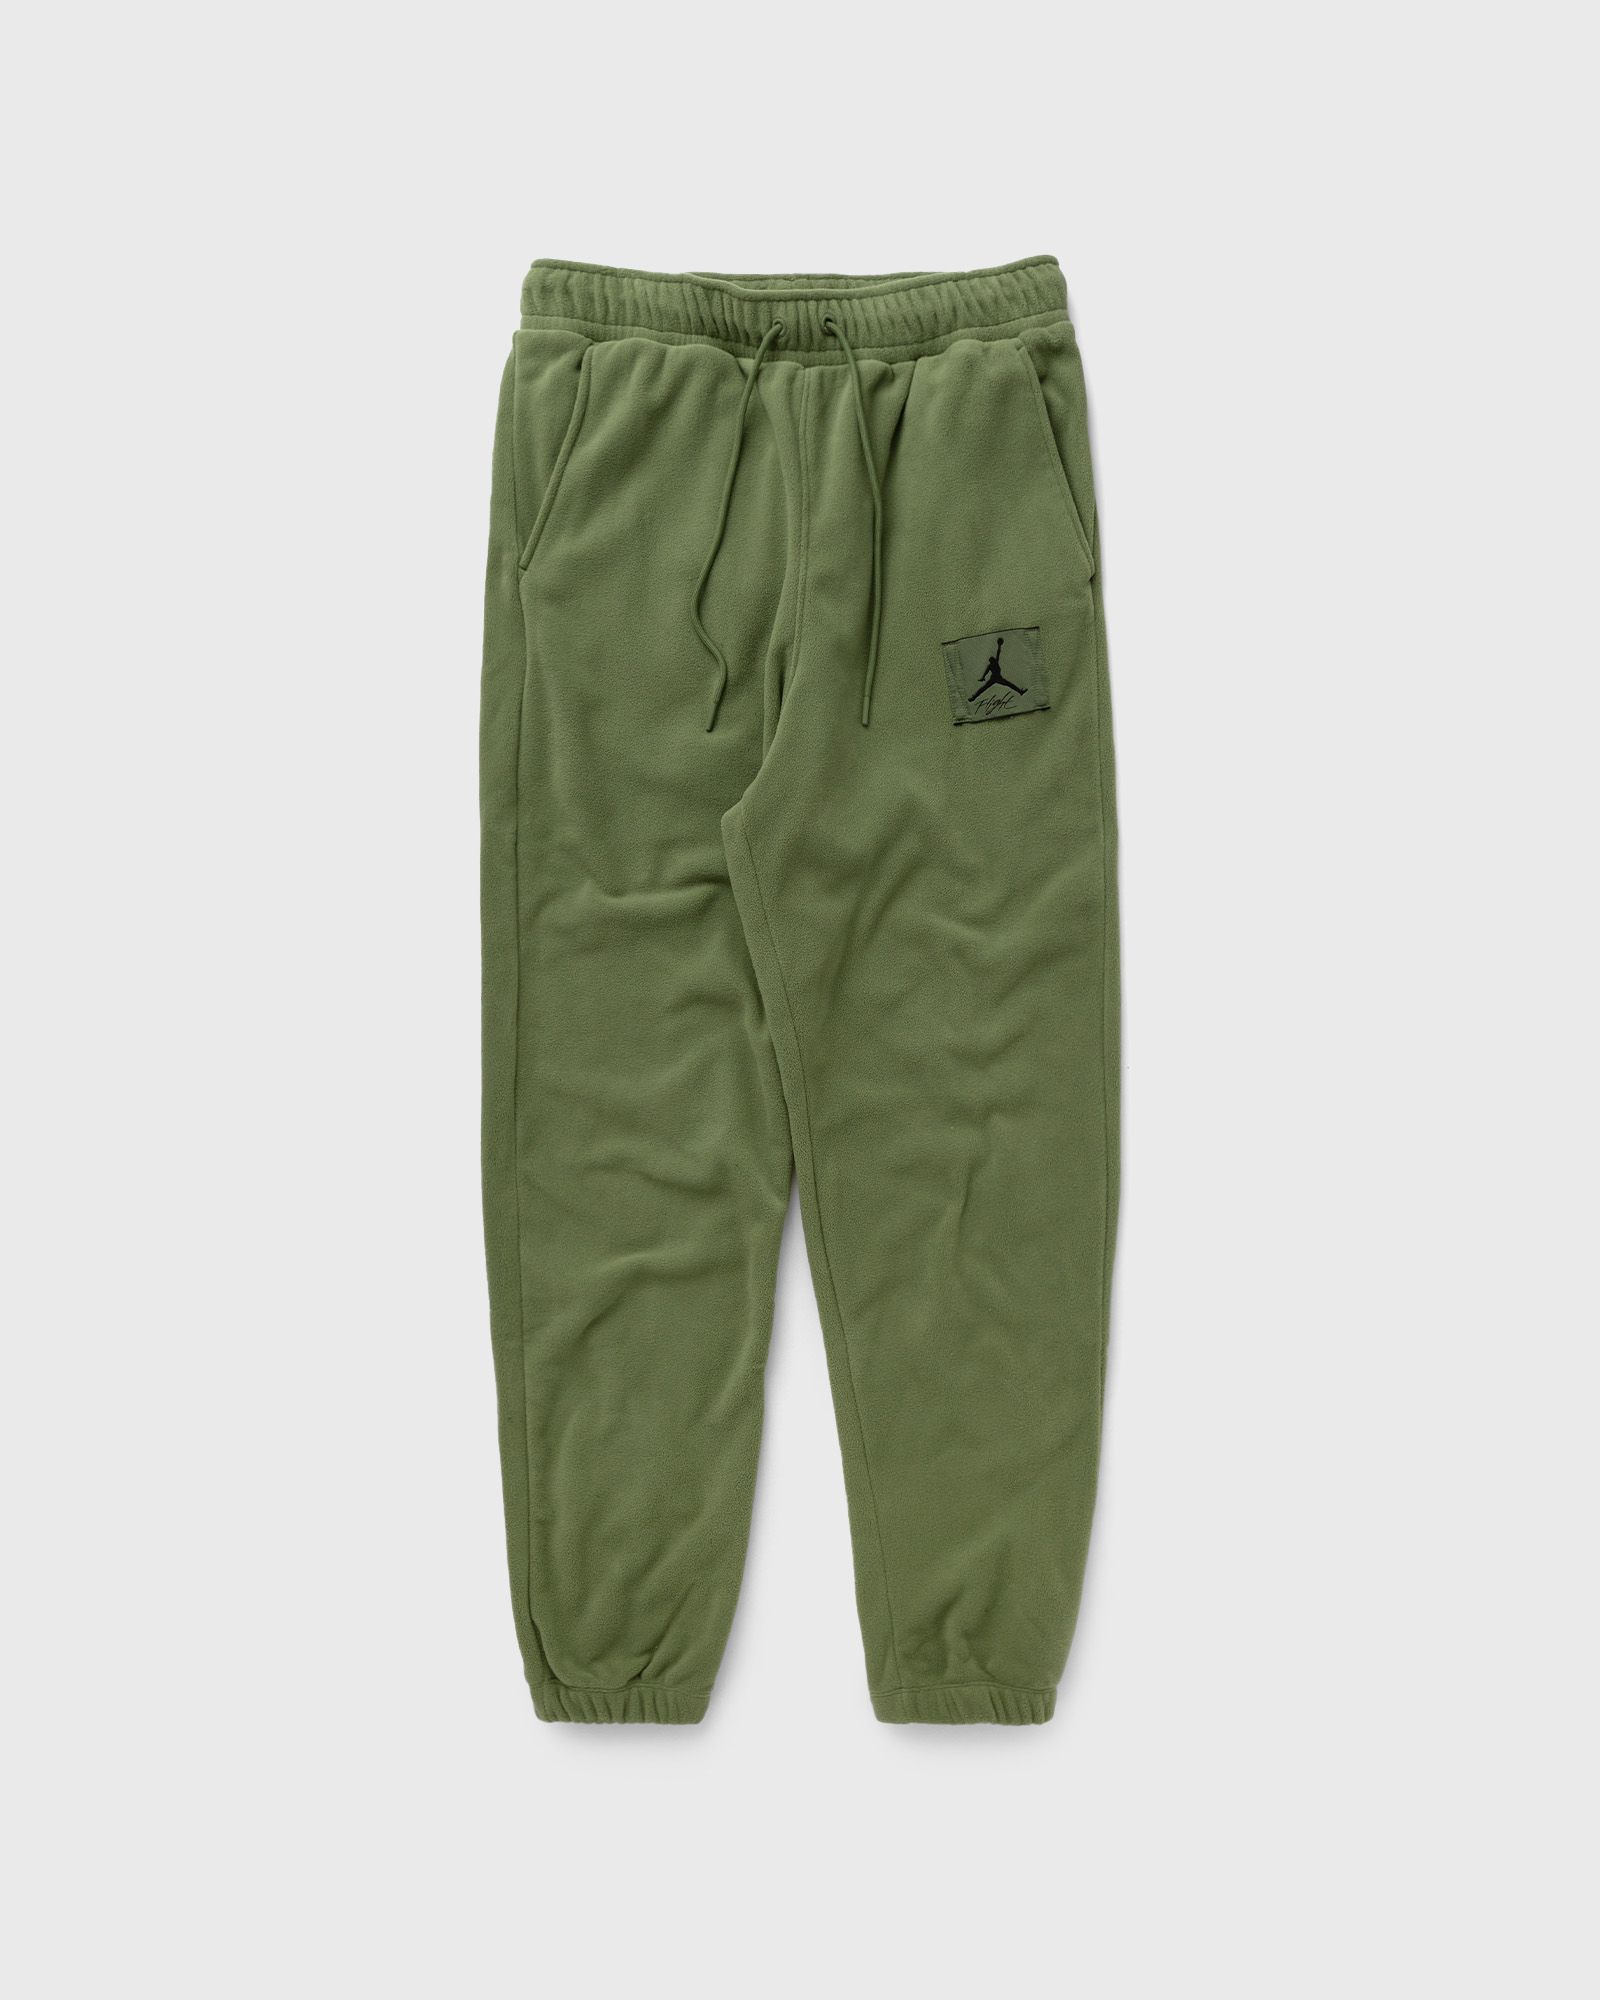 Jordan - essentials men's fleece winter pants men sweatpants green in größe:s